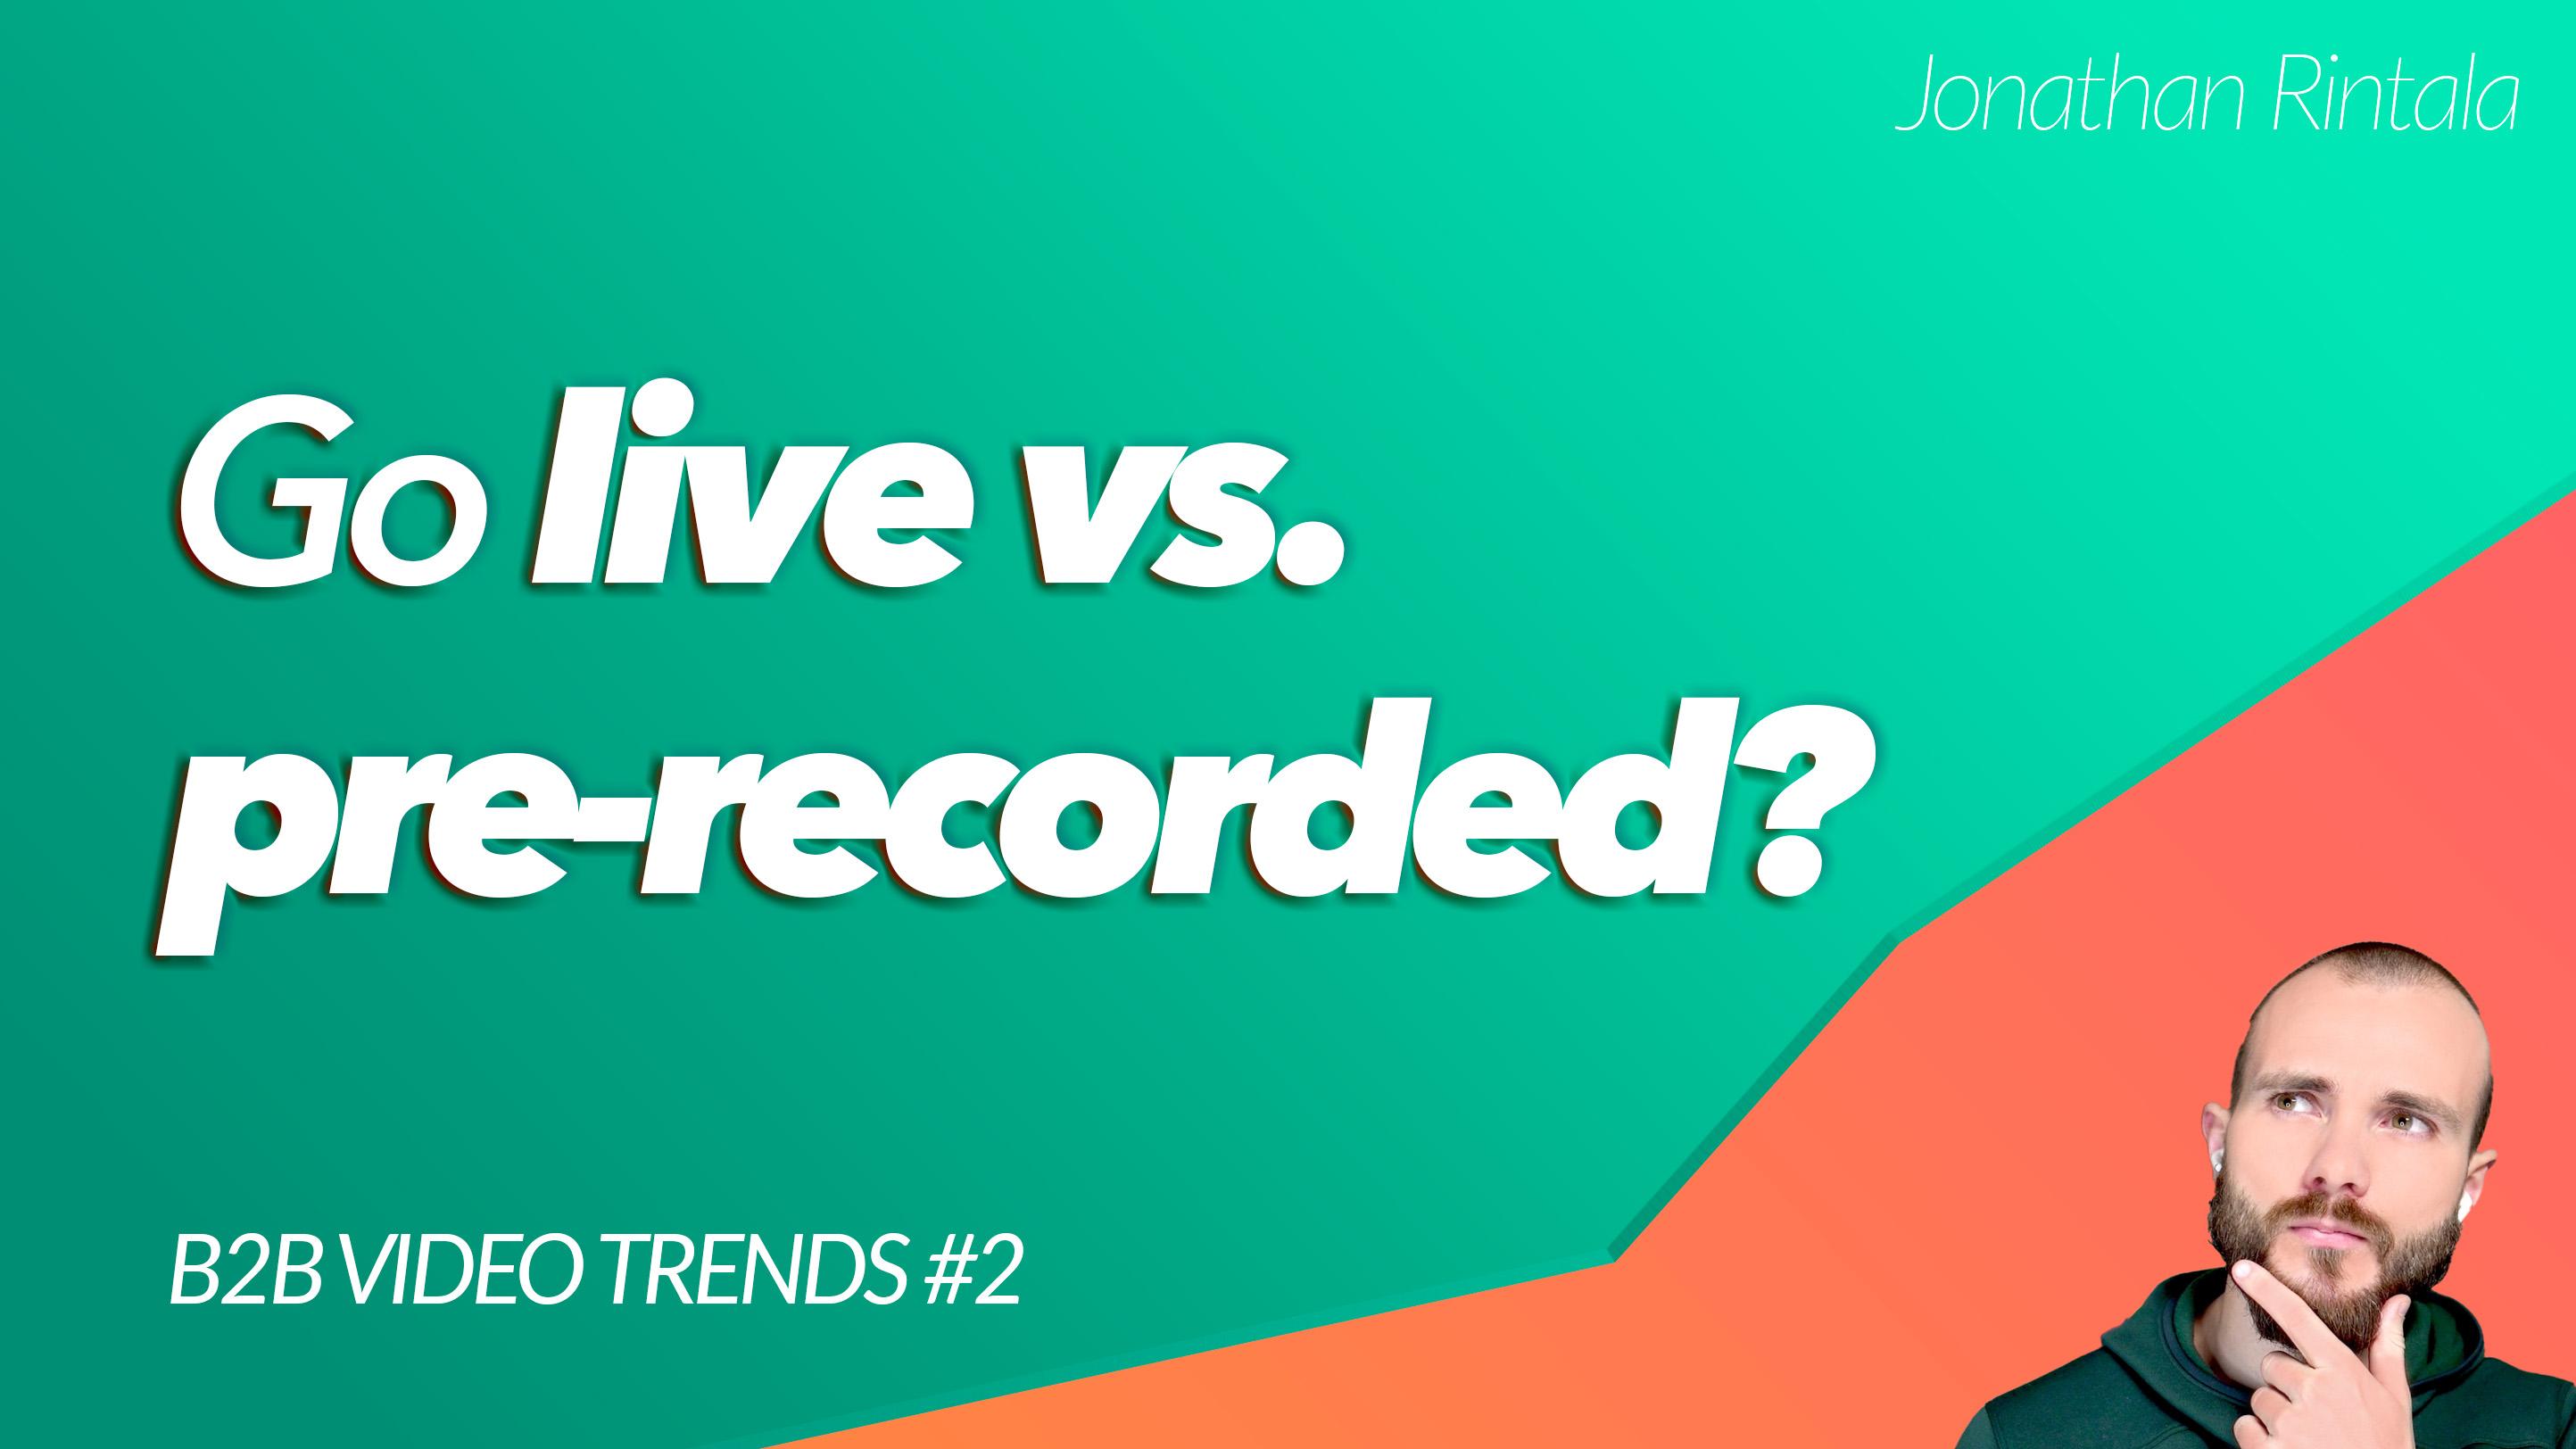 B2B Video Trend: Go live vs. pre-recorded?